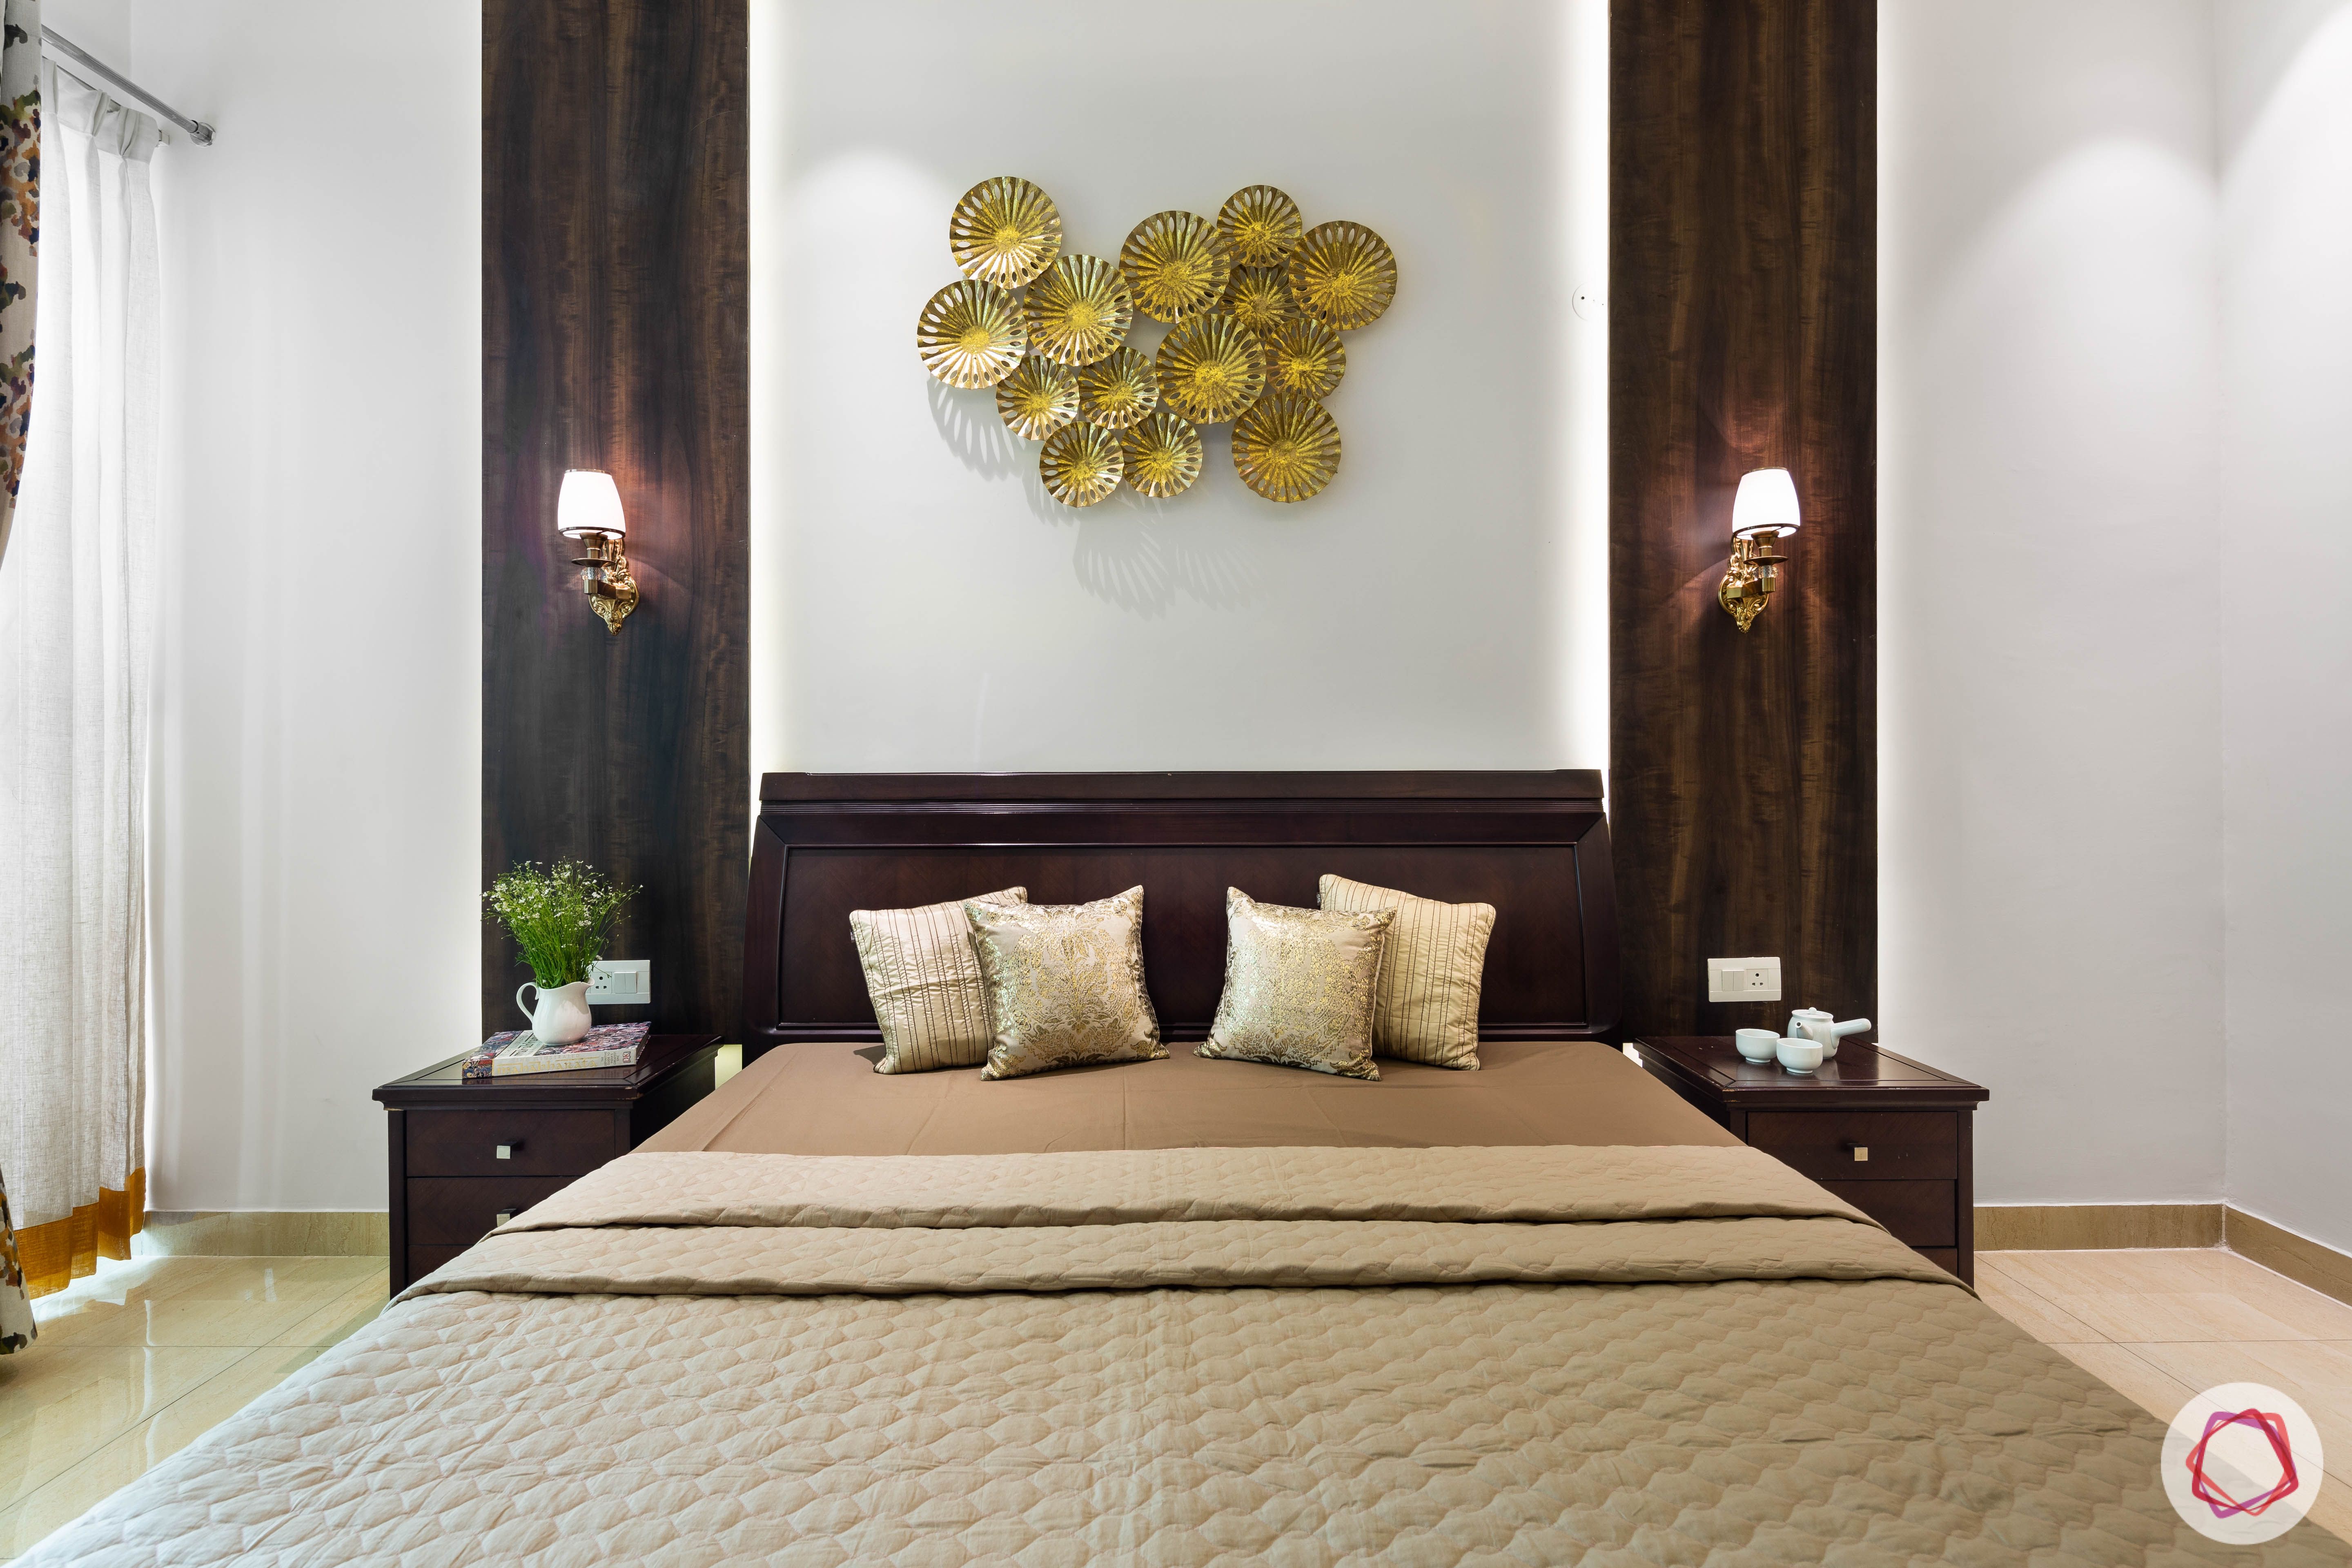 3 bhk flat-master bedroom-bed-veneer panels-wall art